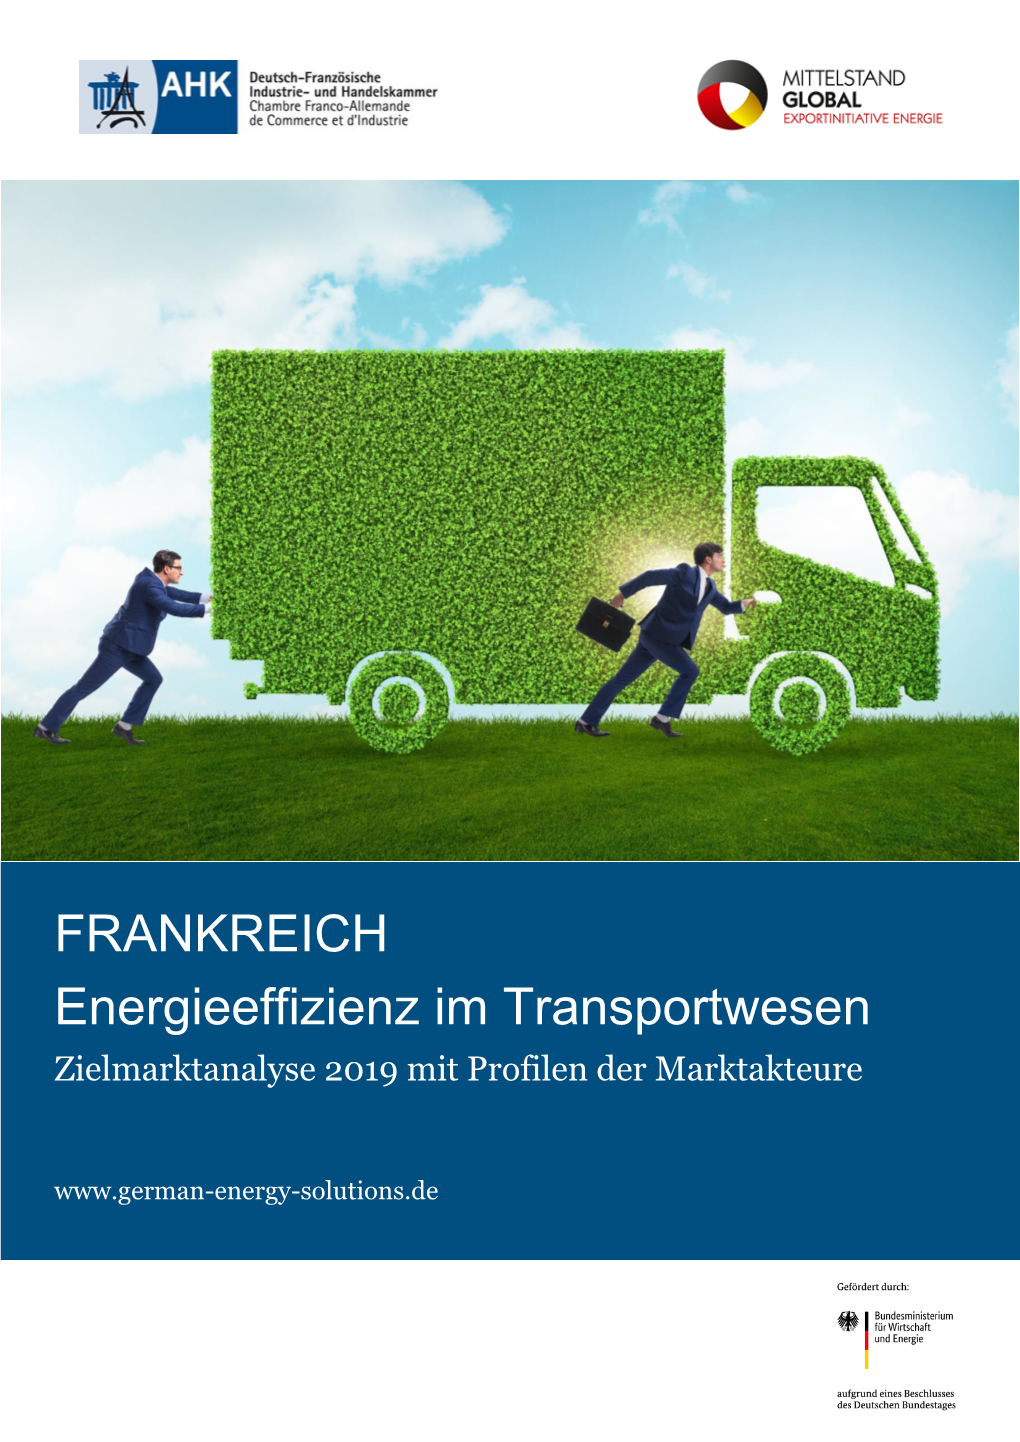 FRANKREICH Energieeffizienz Im Transportwesen Zielmarktanalyse 2019 Mit Profilen Der Marktakteure